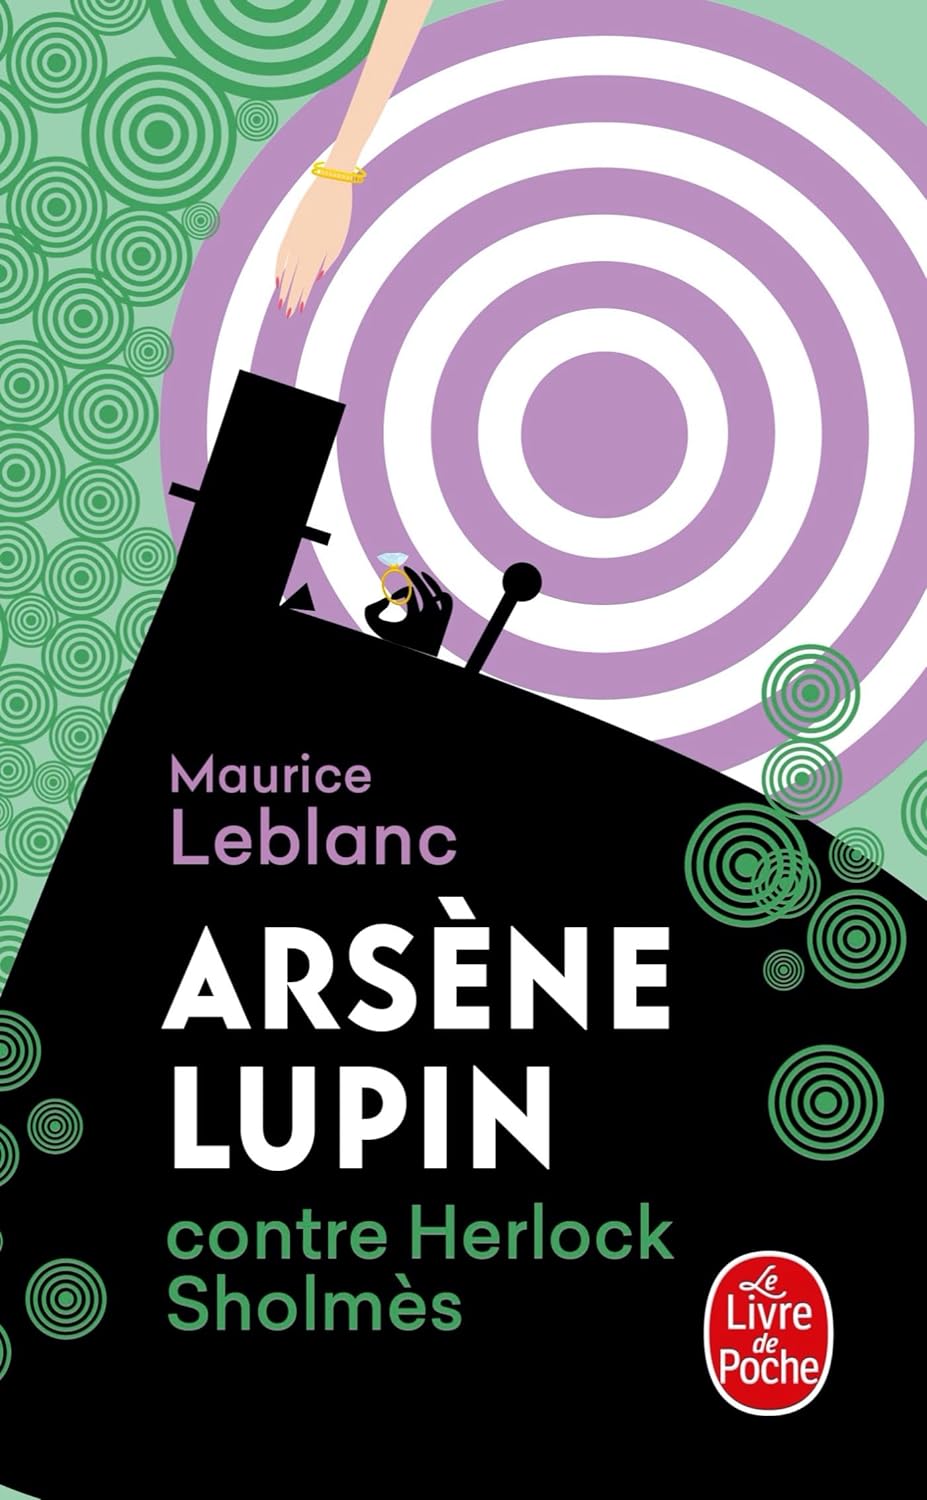 Maurice Leblanc: Arsène Lupin contre Herlock Sholmès (Paperback, Français language, Livre de poche)